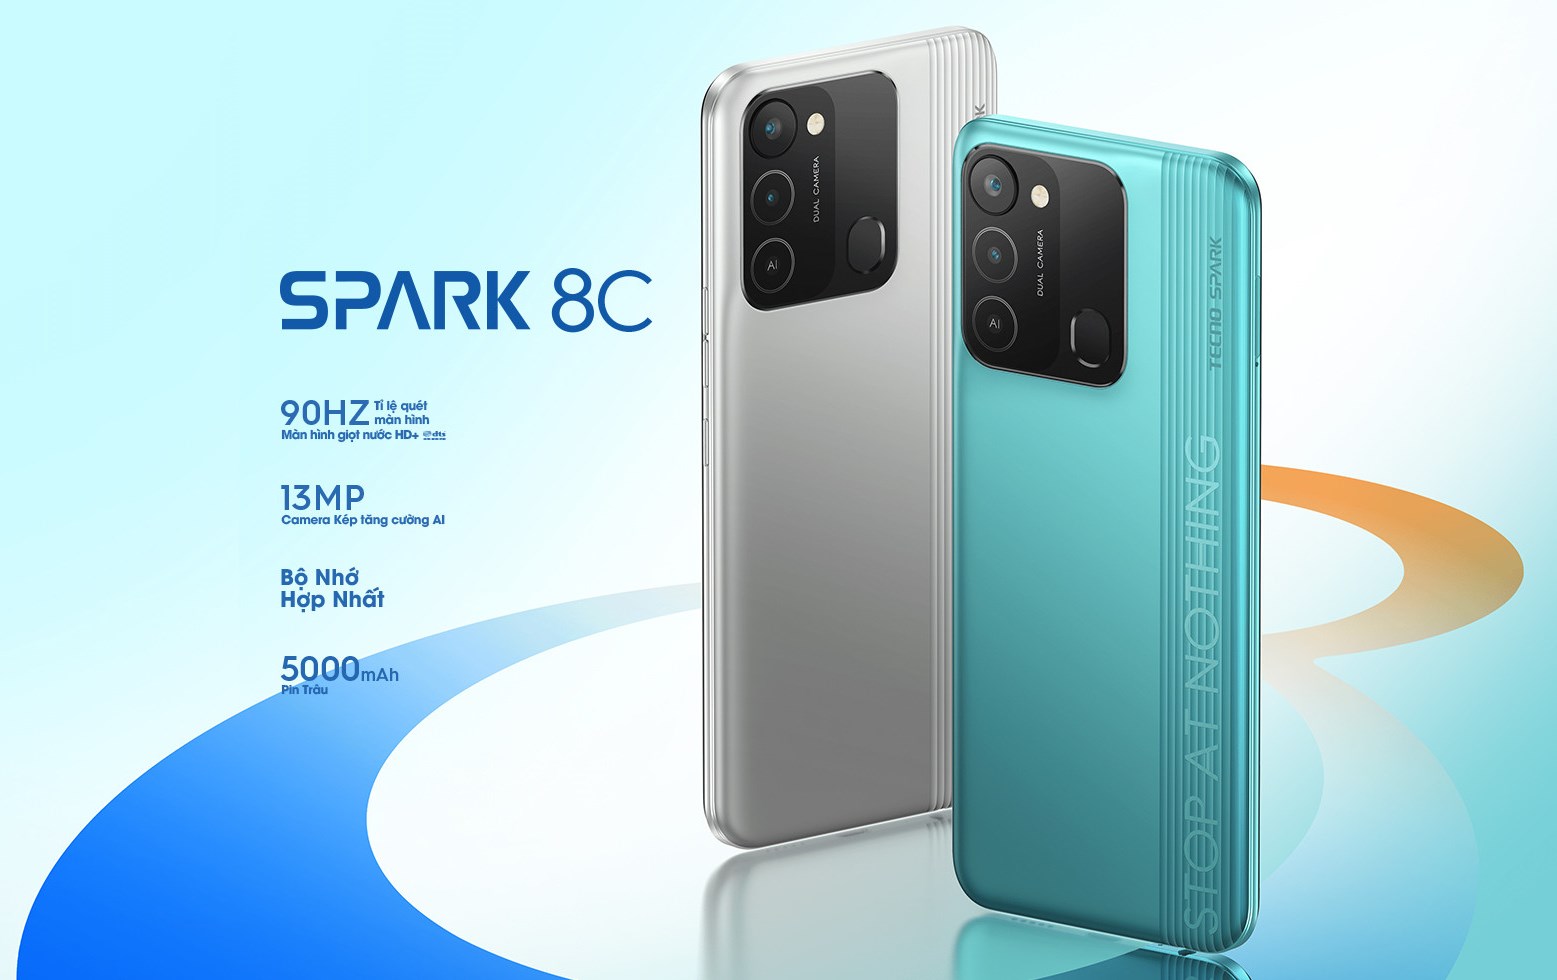 TECNO ra mắt điện thoại giá rẻ Spark 8C với RAM 7GB, màn hình to 90Hz - Ảnh 1.